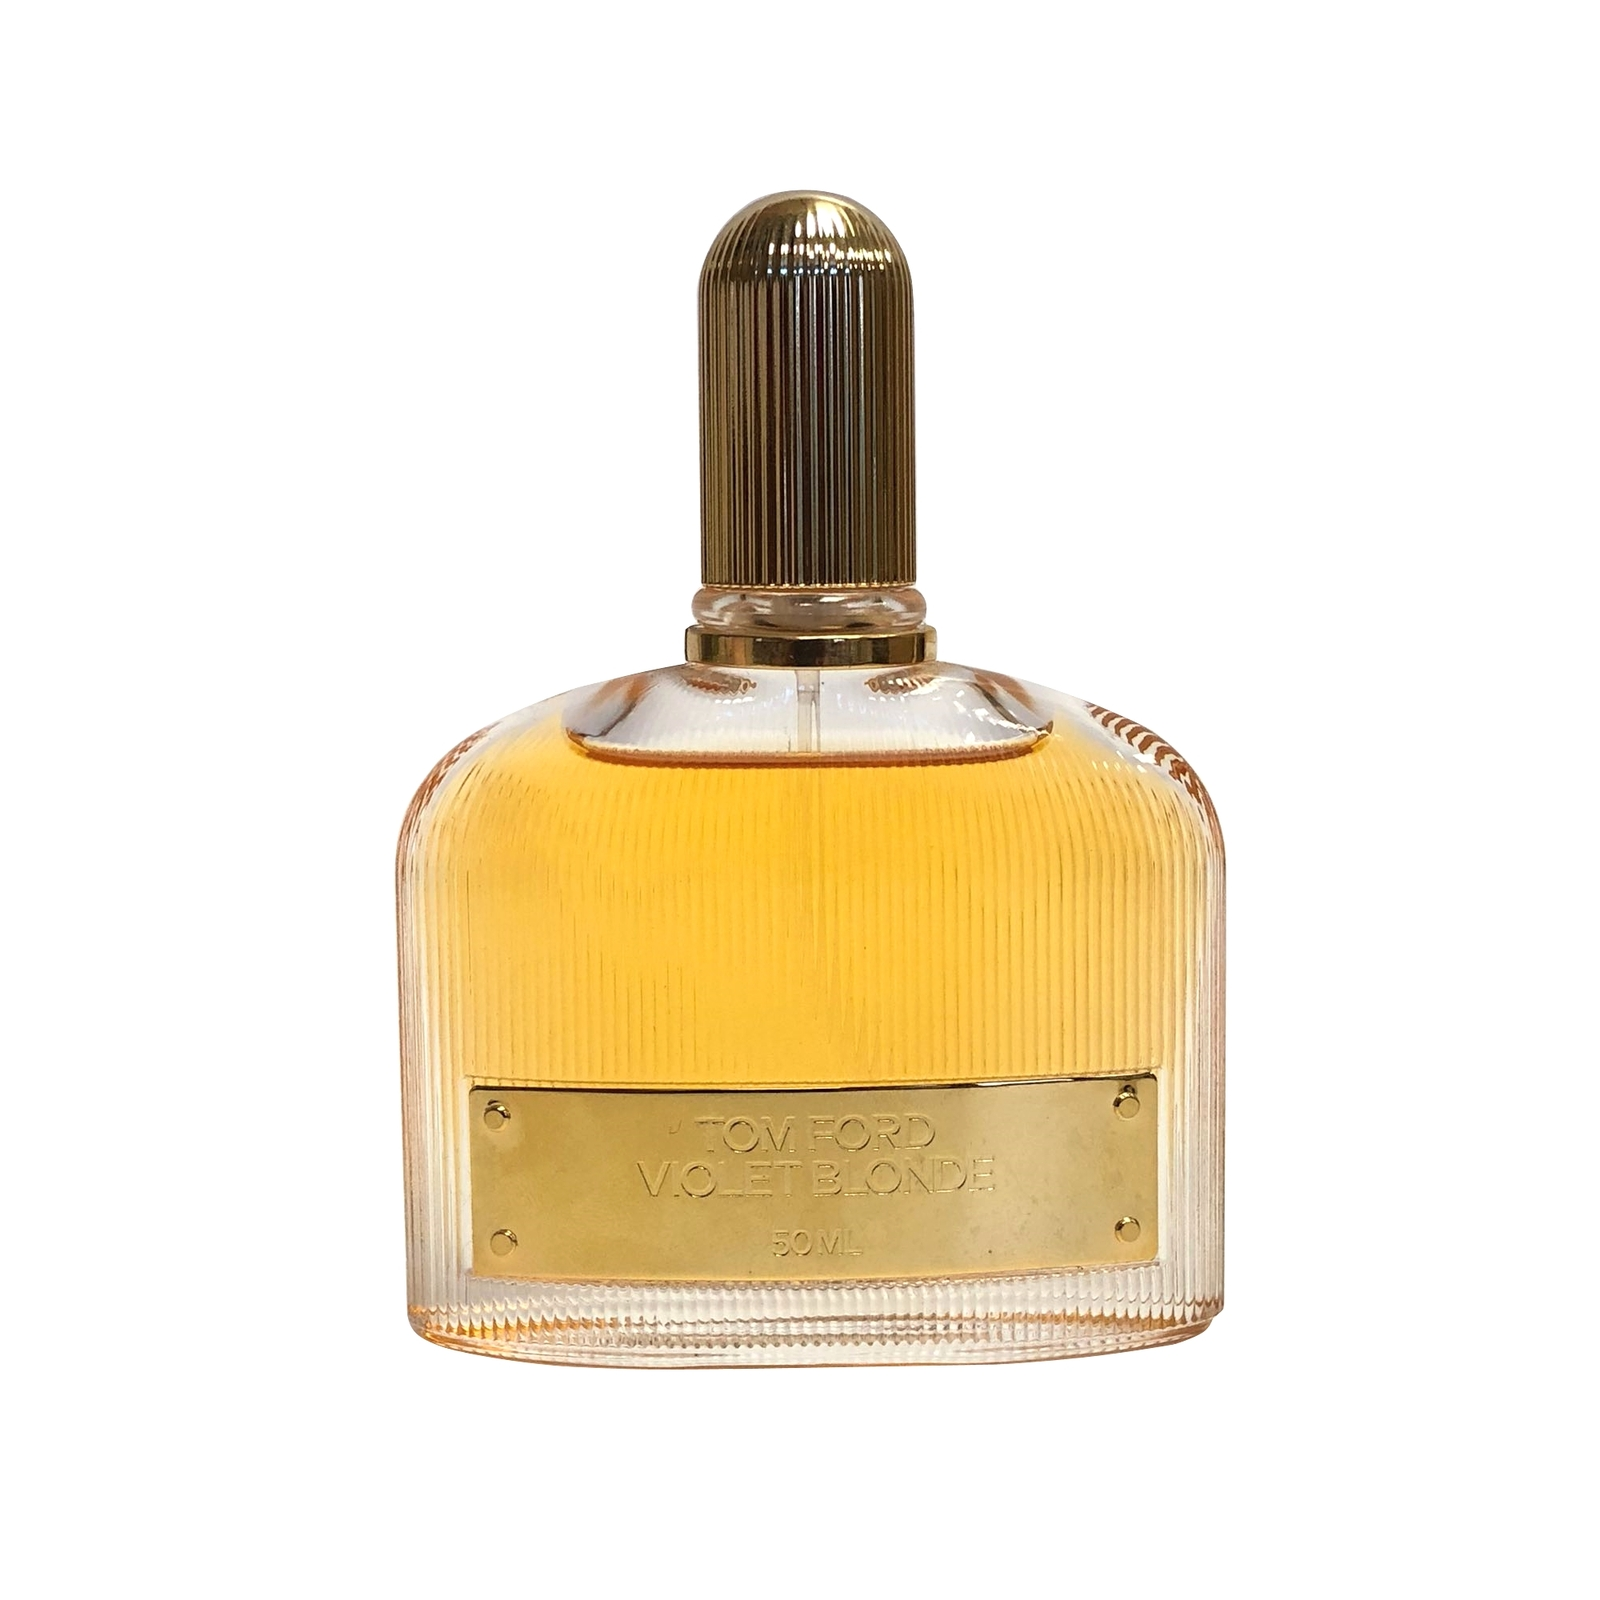 Primary image for Tom Ford Violet Blonde Perfume 1.7 Oz Eau De Parfum Spray